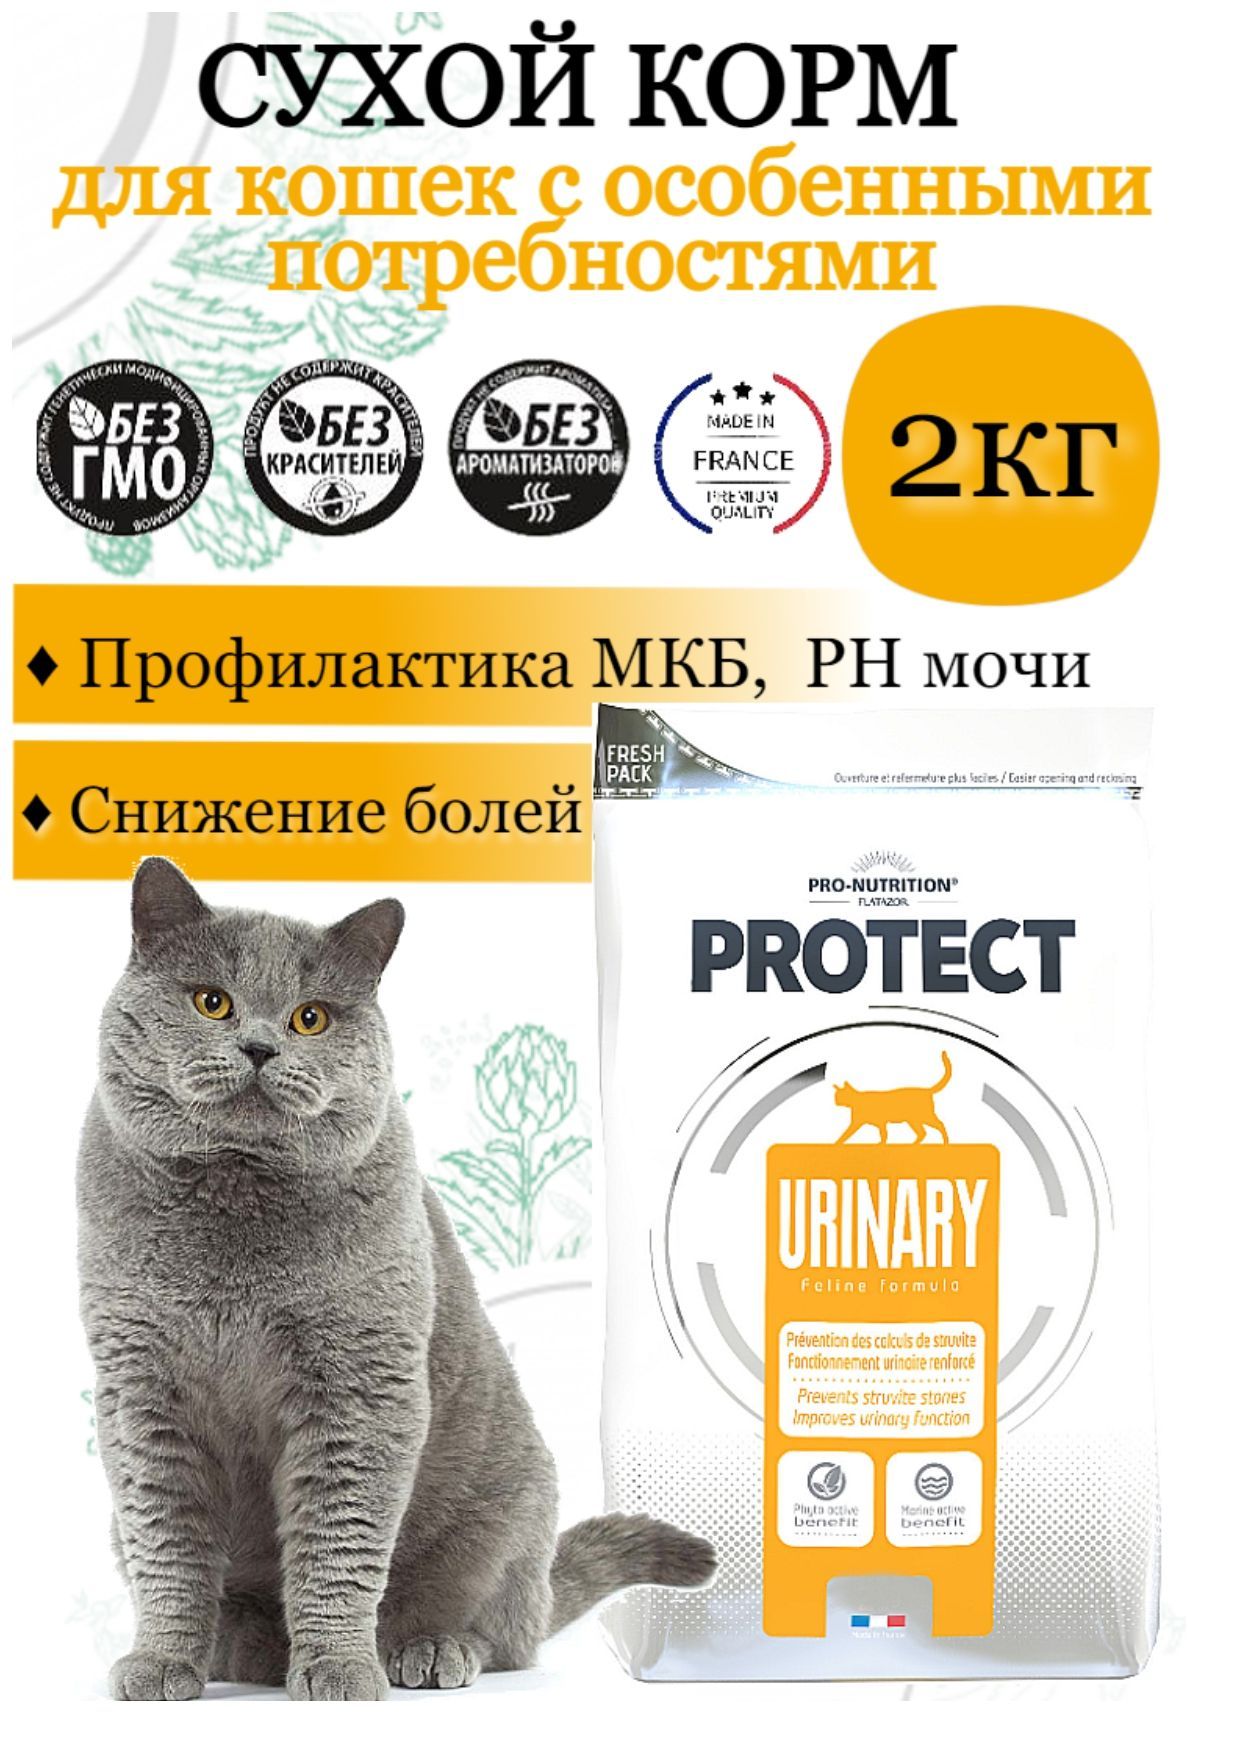 Protect Urinary Cat (2кг) - полнорационный сухой корм для кошек для  профилактики МКБ (струвитных и оксалатных камней). Снижение болей и  укрепление мочевой системы / Франция - купить с доставкой по выгодным ценам